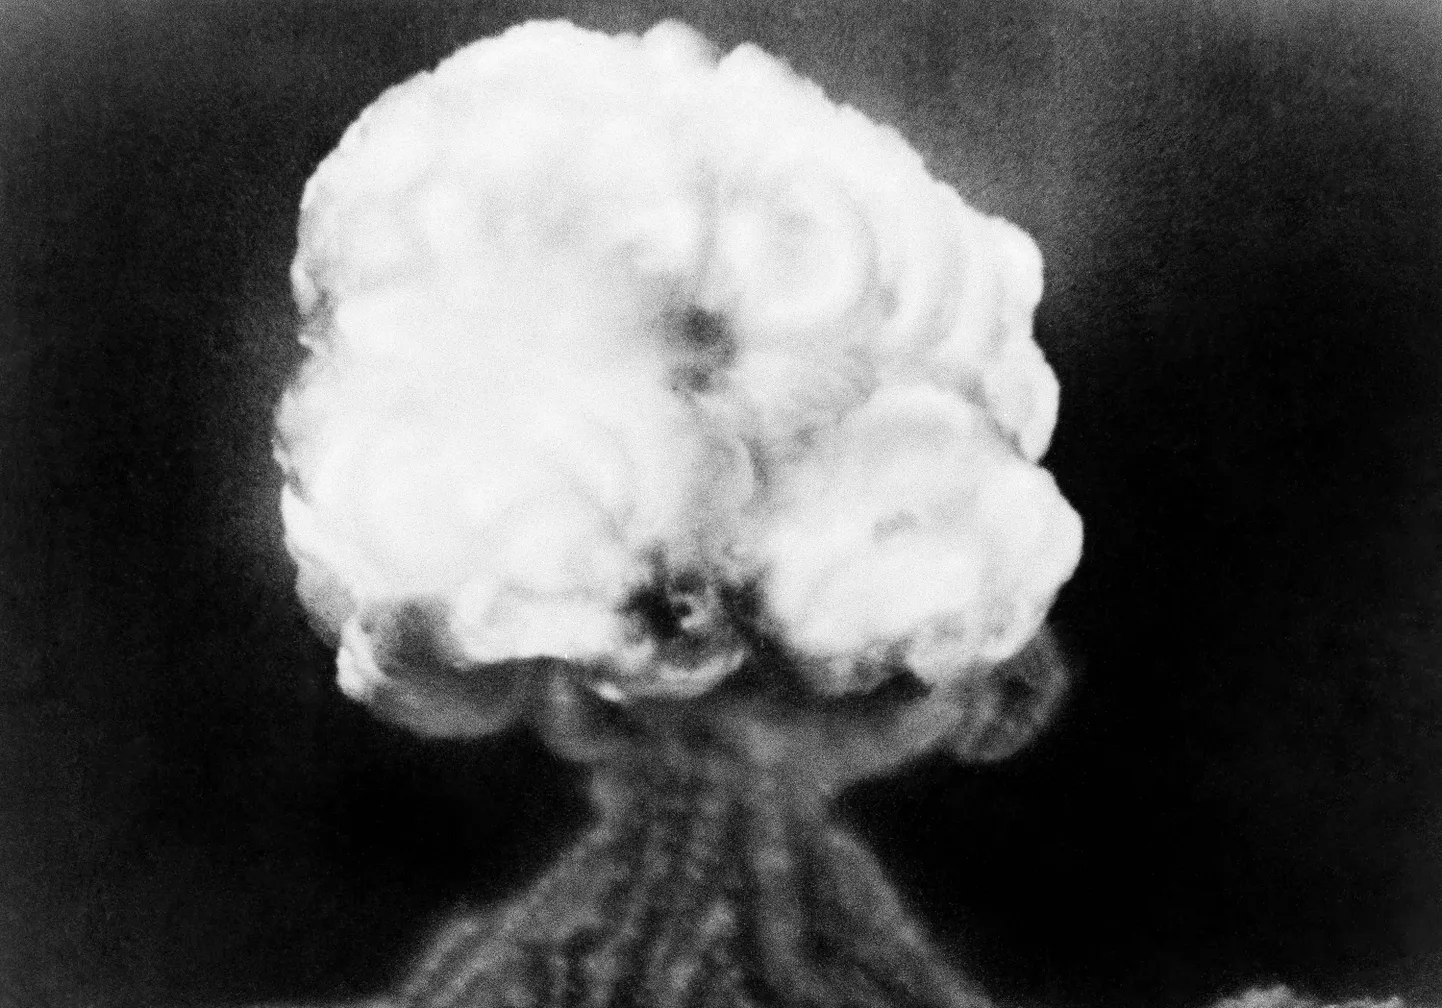 Foto esimesest tuumakatsetusest USA New Mexico osariigis 16. juulil 1945.